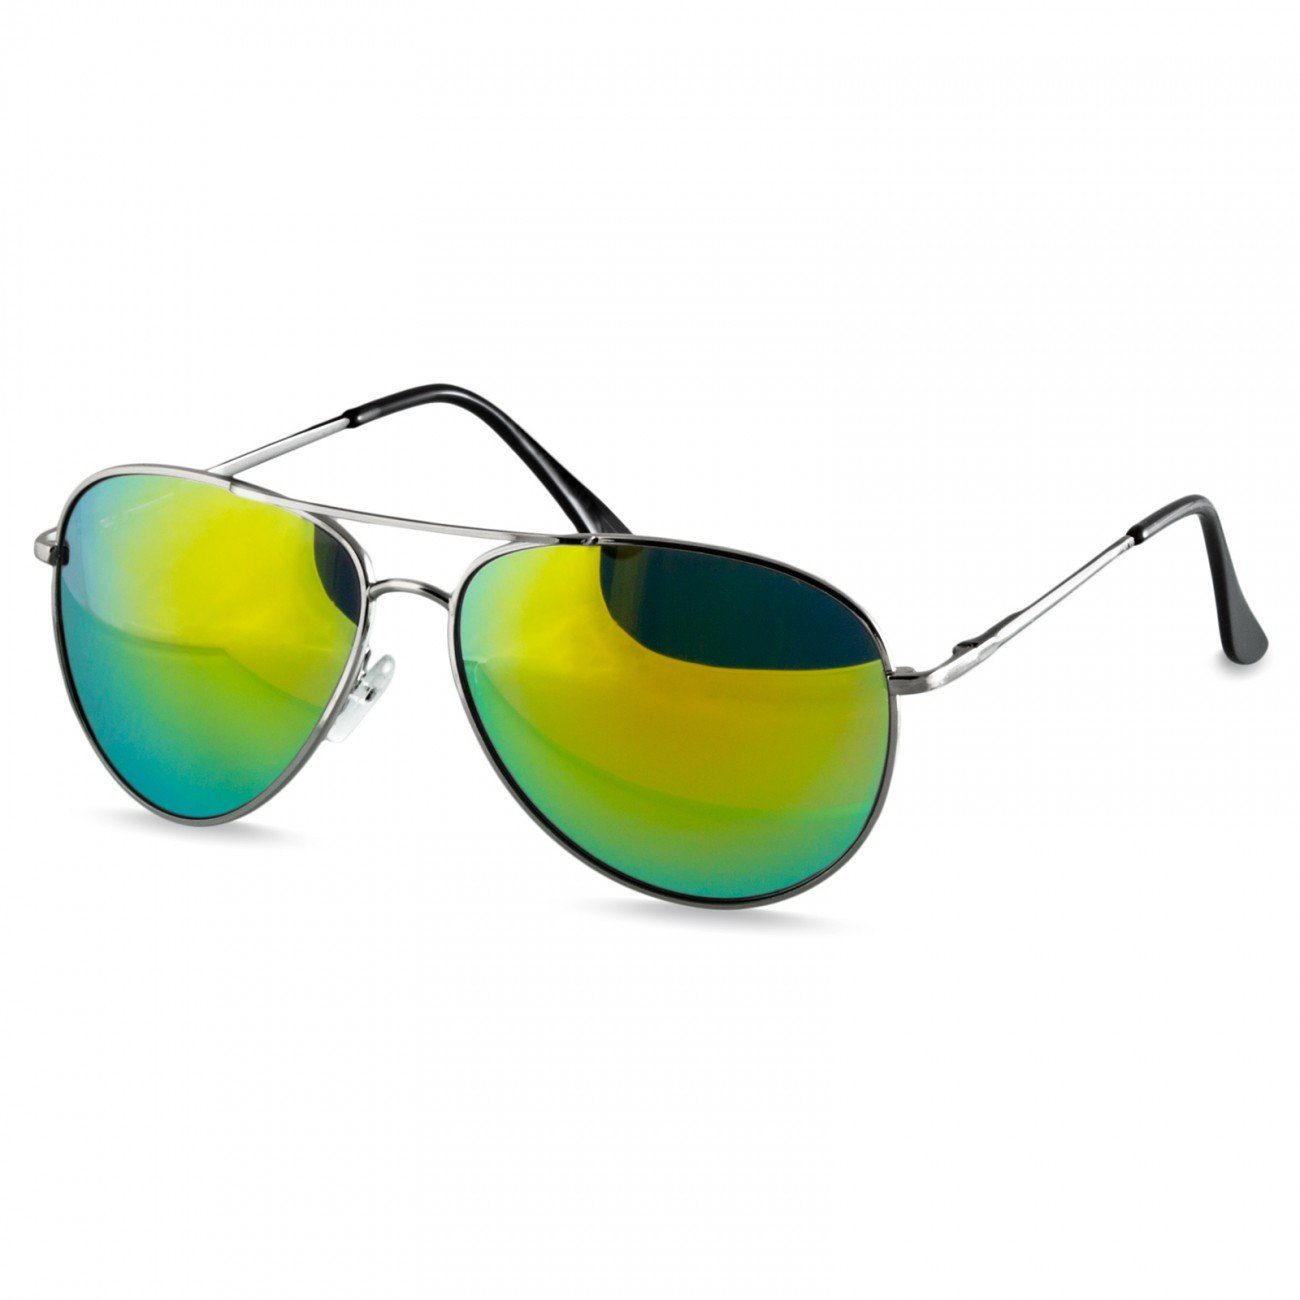 Caspar Sonnenbrille SG013 klassische Unisex Retro Pilotenbrille silber / grün gold verspiegelt